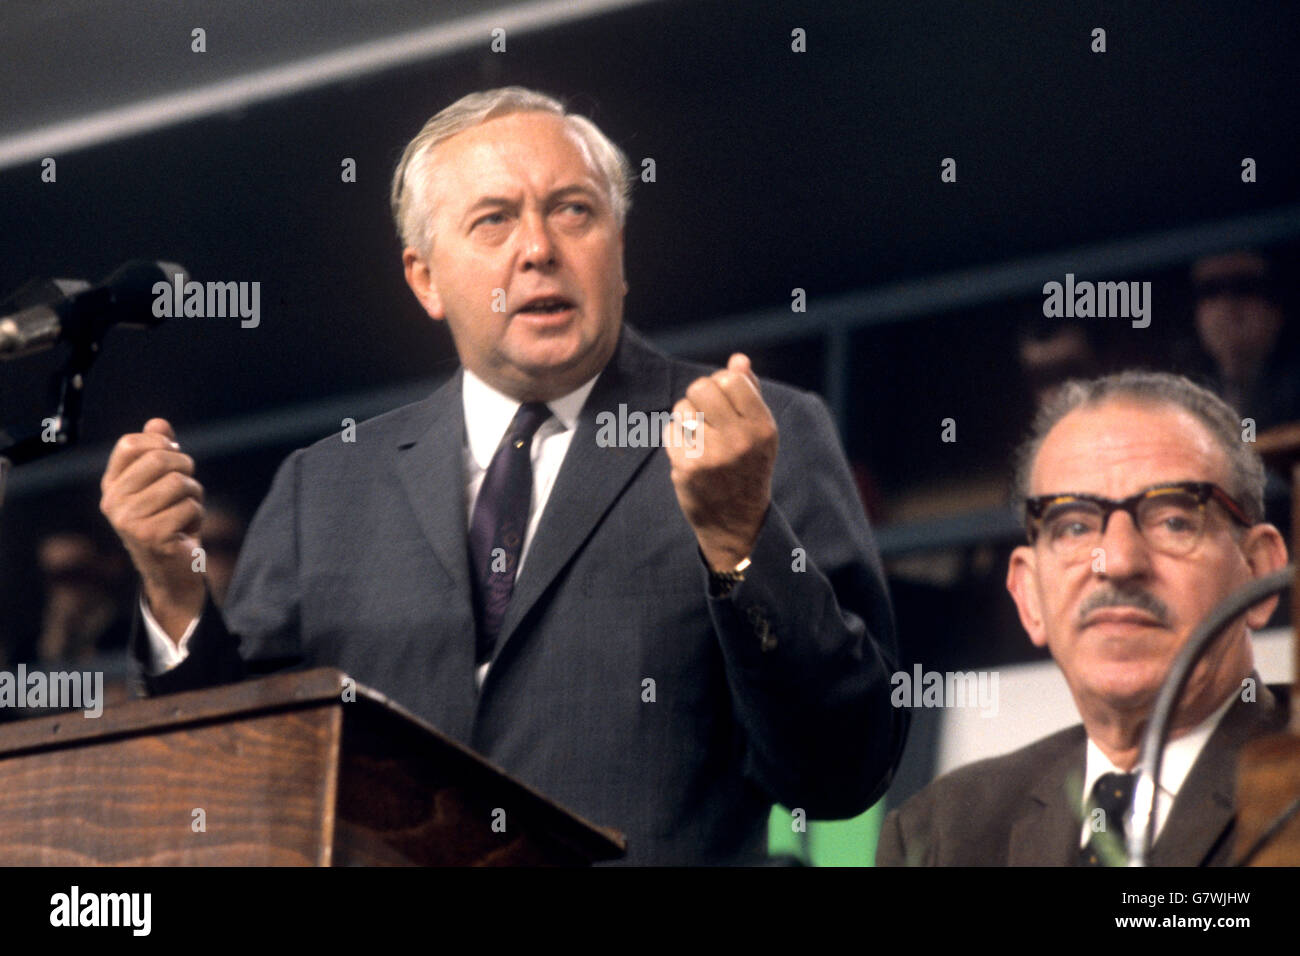 Der pfeifenrauchenden Premierminister Harold Wilson im Bild während der Labour Party Konferenz in Brighton. Stockfoto